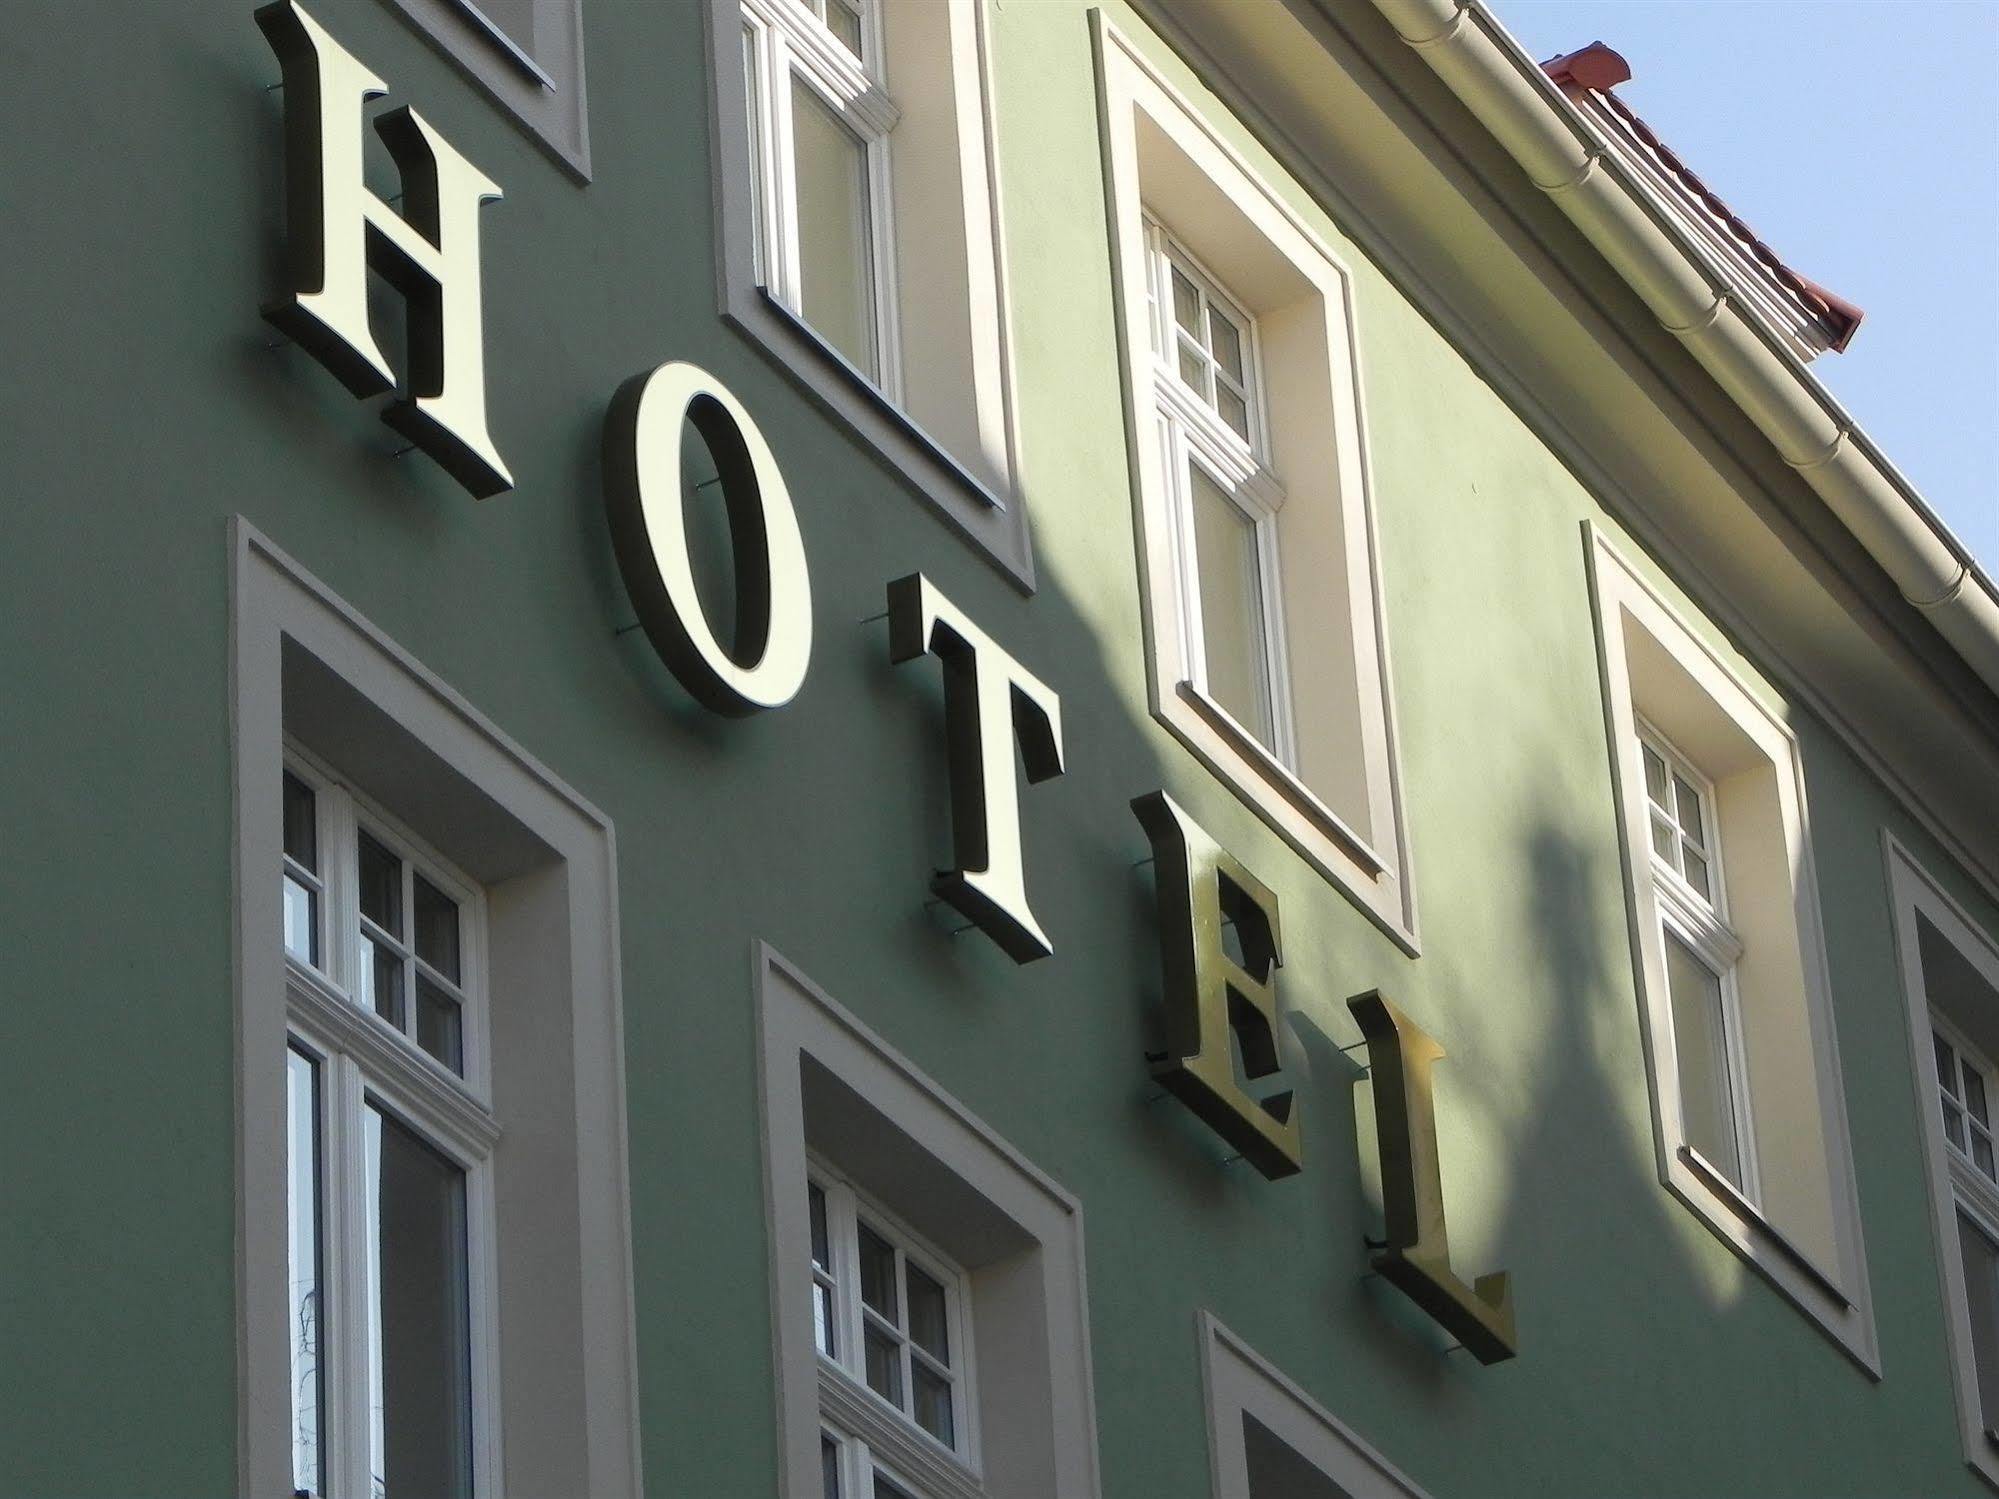 Hotel Schwibbogen Gorlitz Luaran gambar